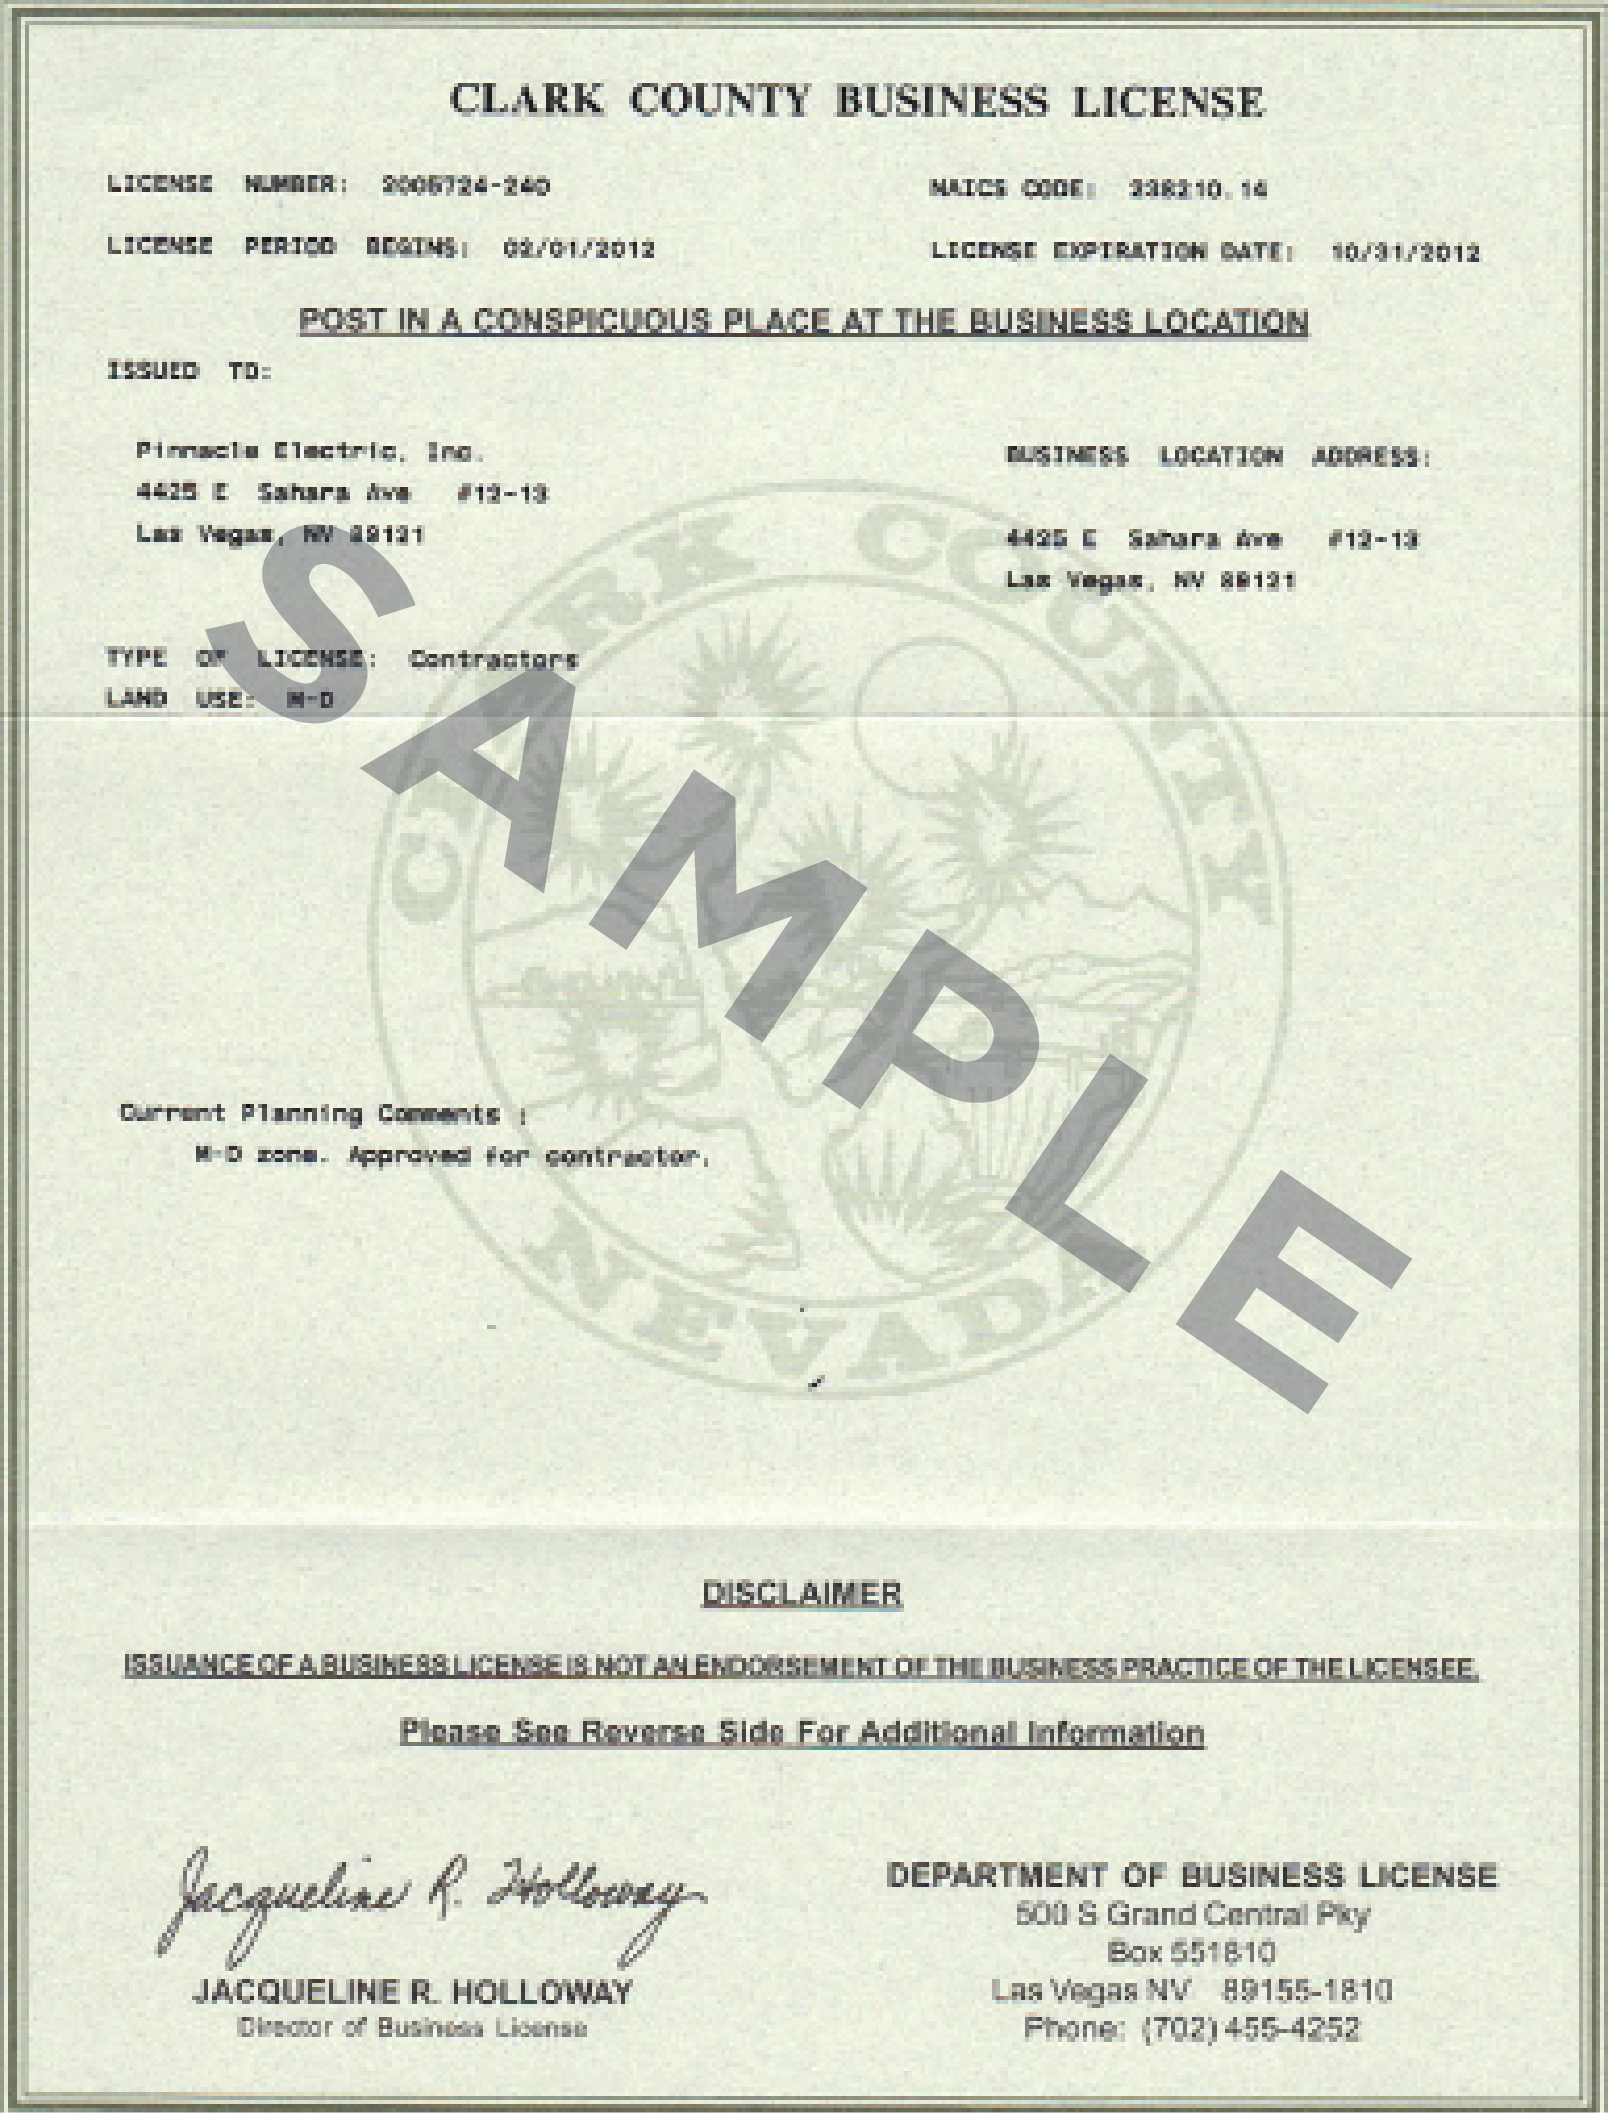 Esta imagen muestra un ejemplo de una licencia comercial del condado de Clark